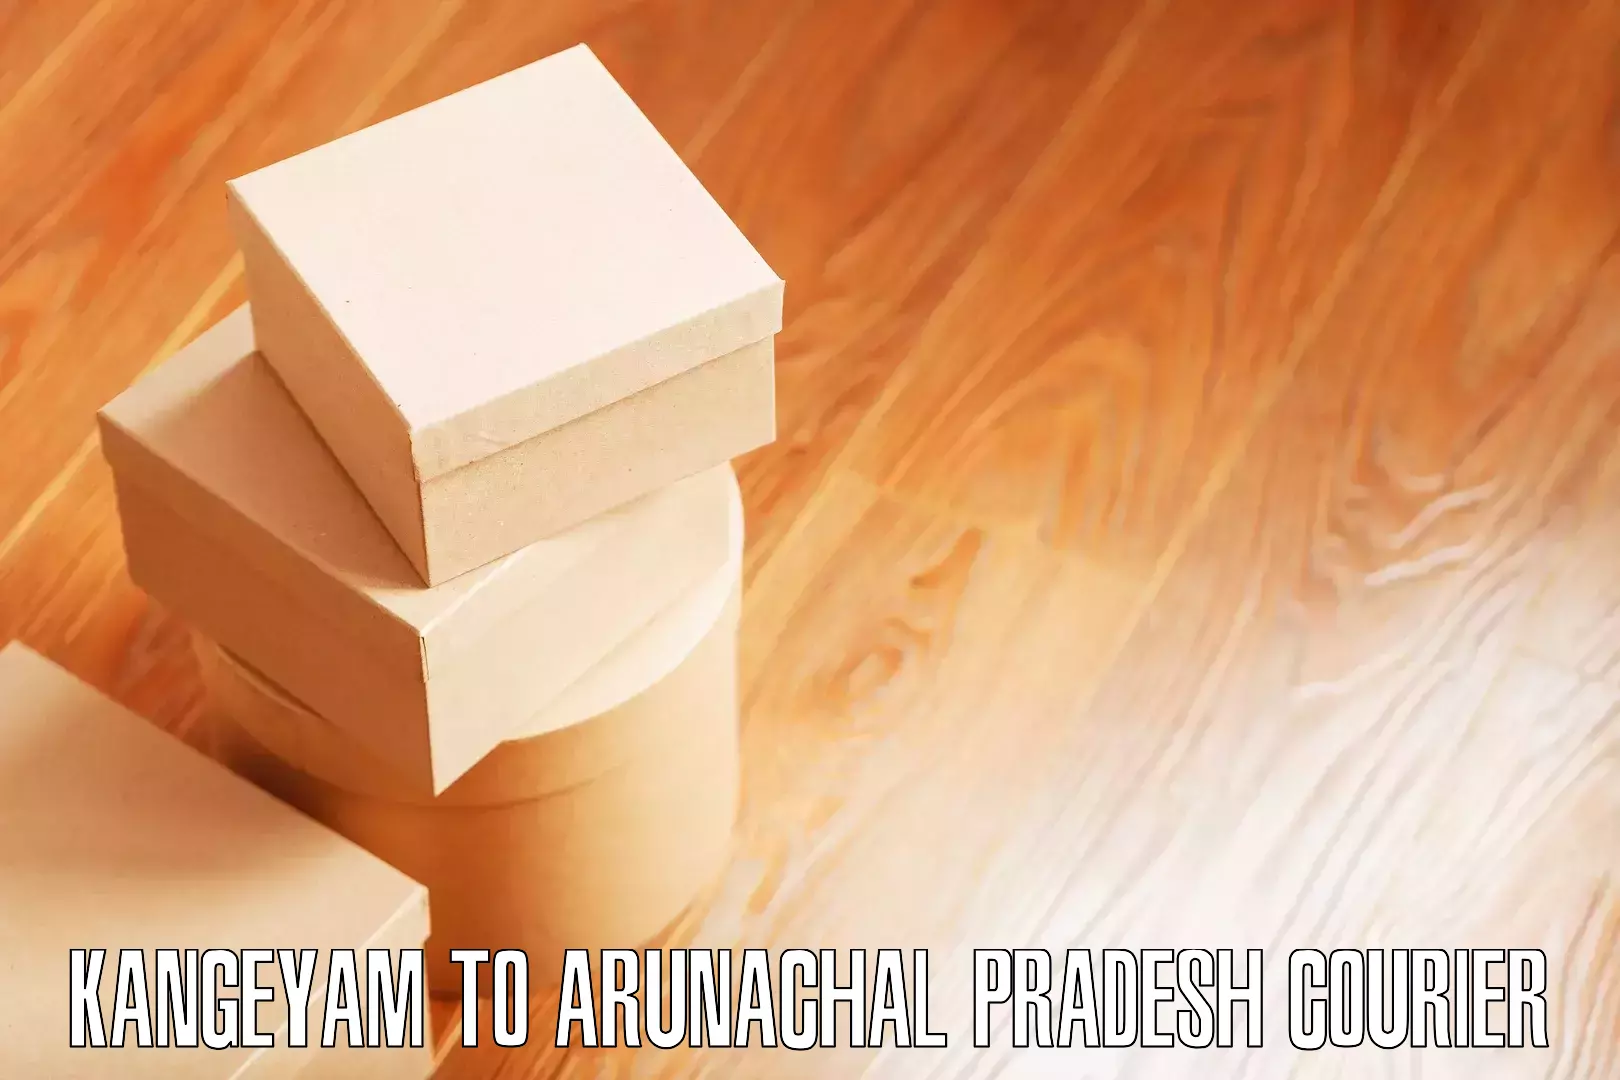 Efficient furniture shifting Kangeyam to Arunachal Pradesh